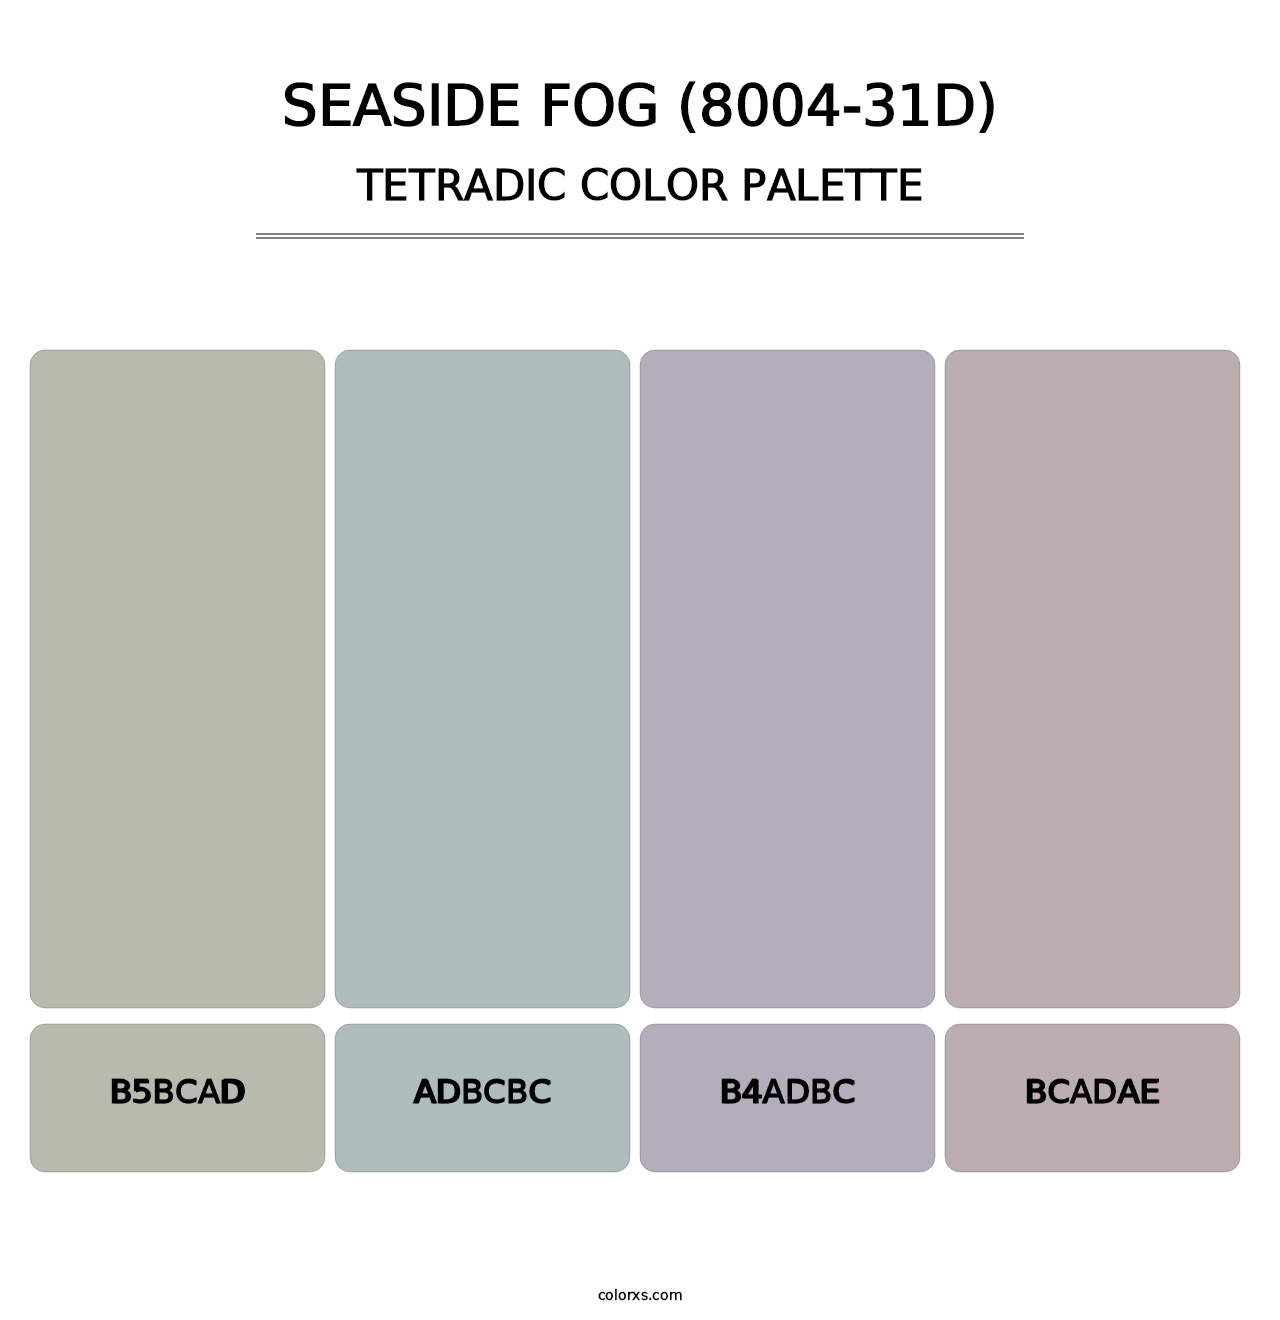 Seaside Fog (8004-31D) - Tetradic Color Palette